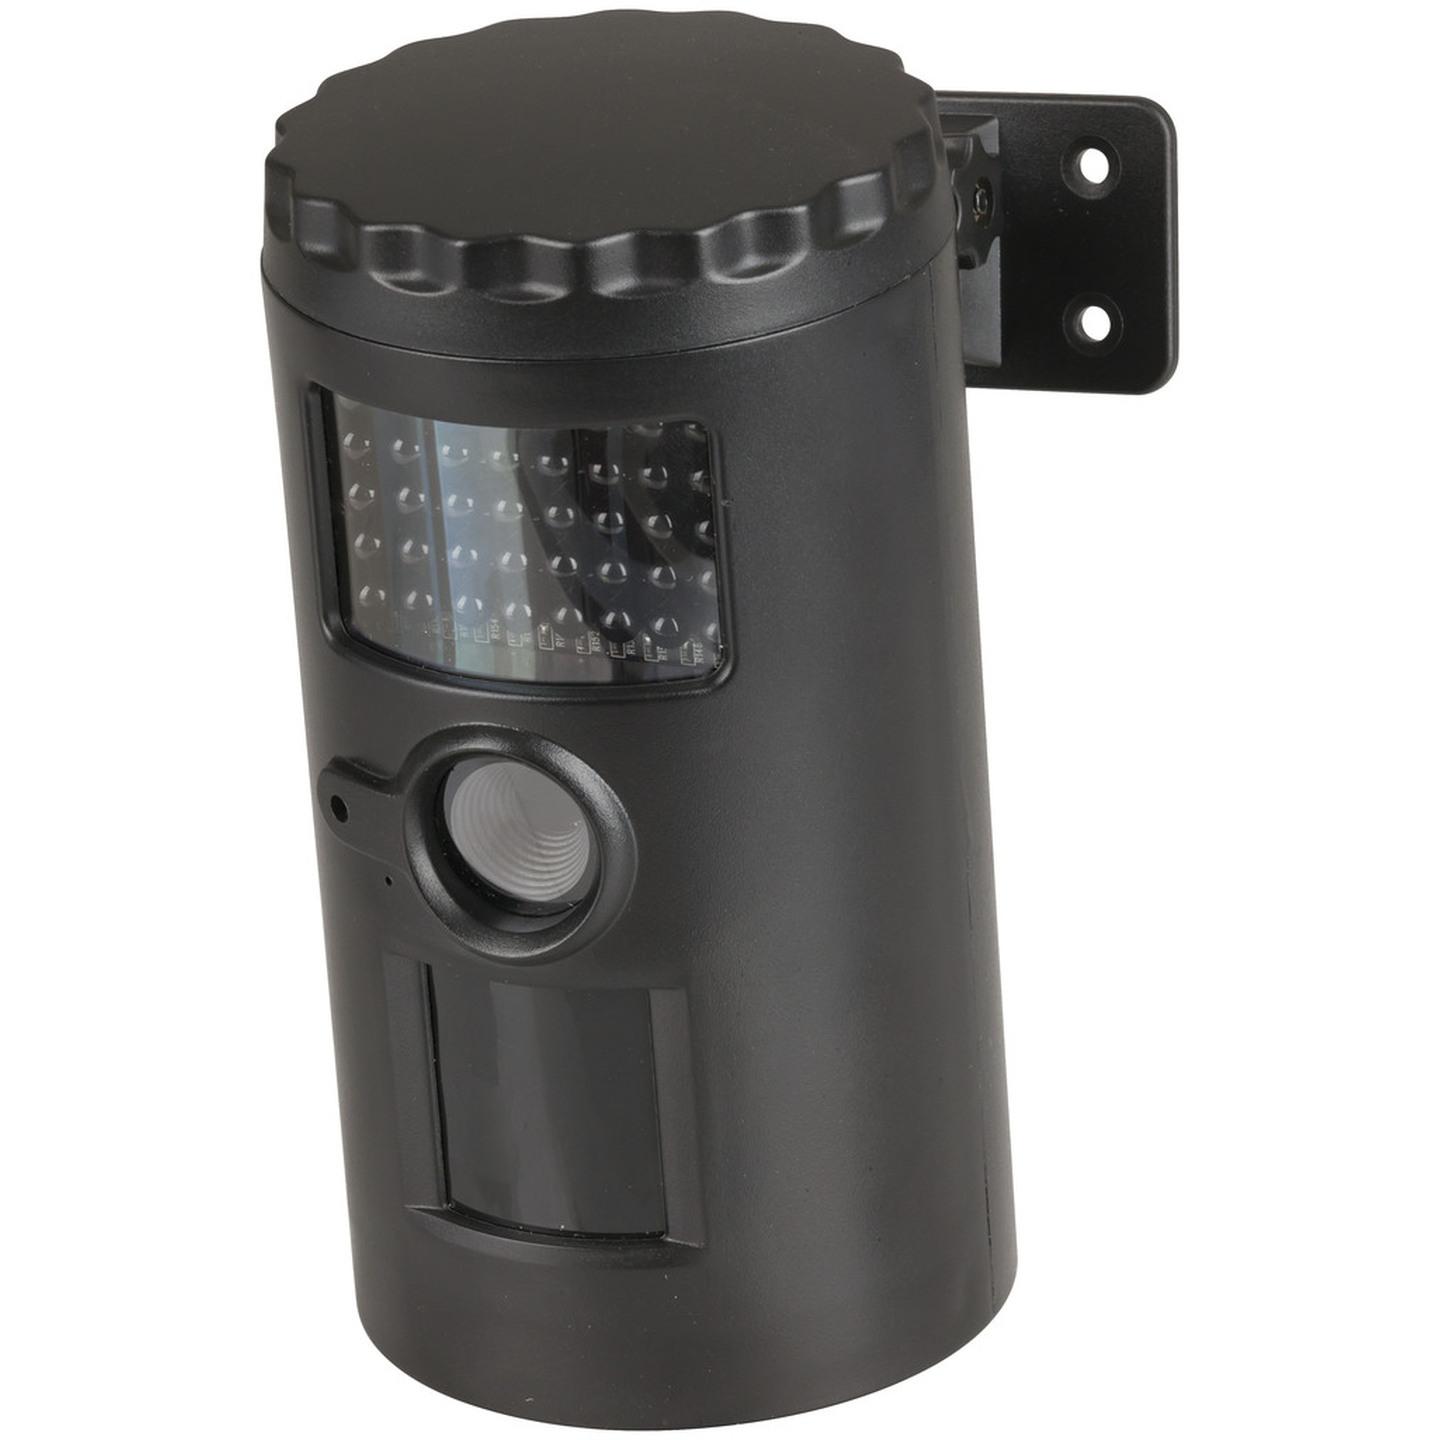 Motion Sensor Camera recorder with 38 IR LEDs